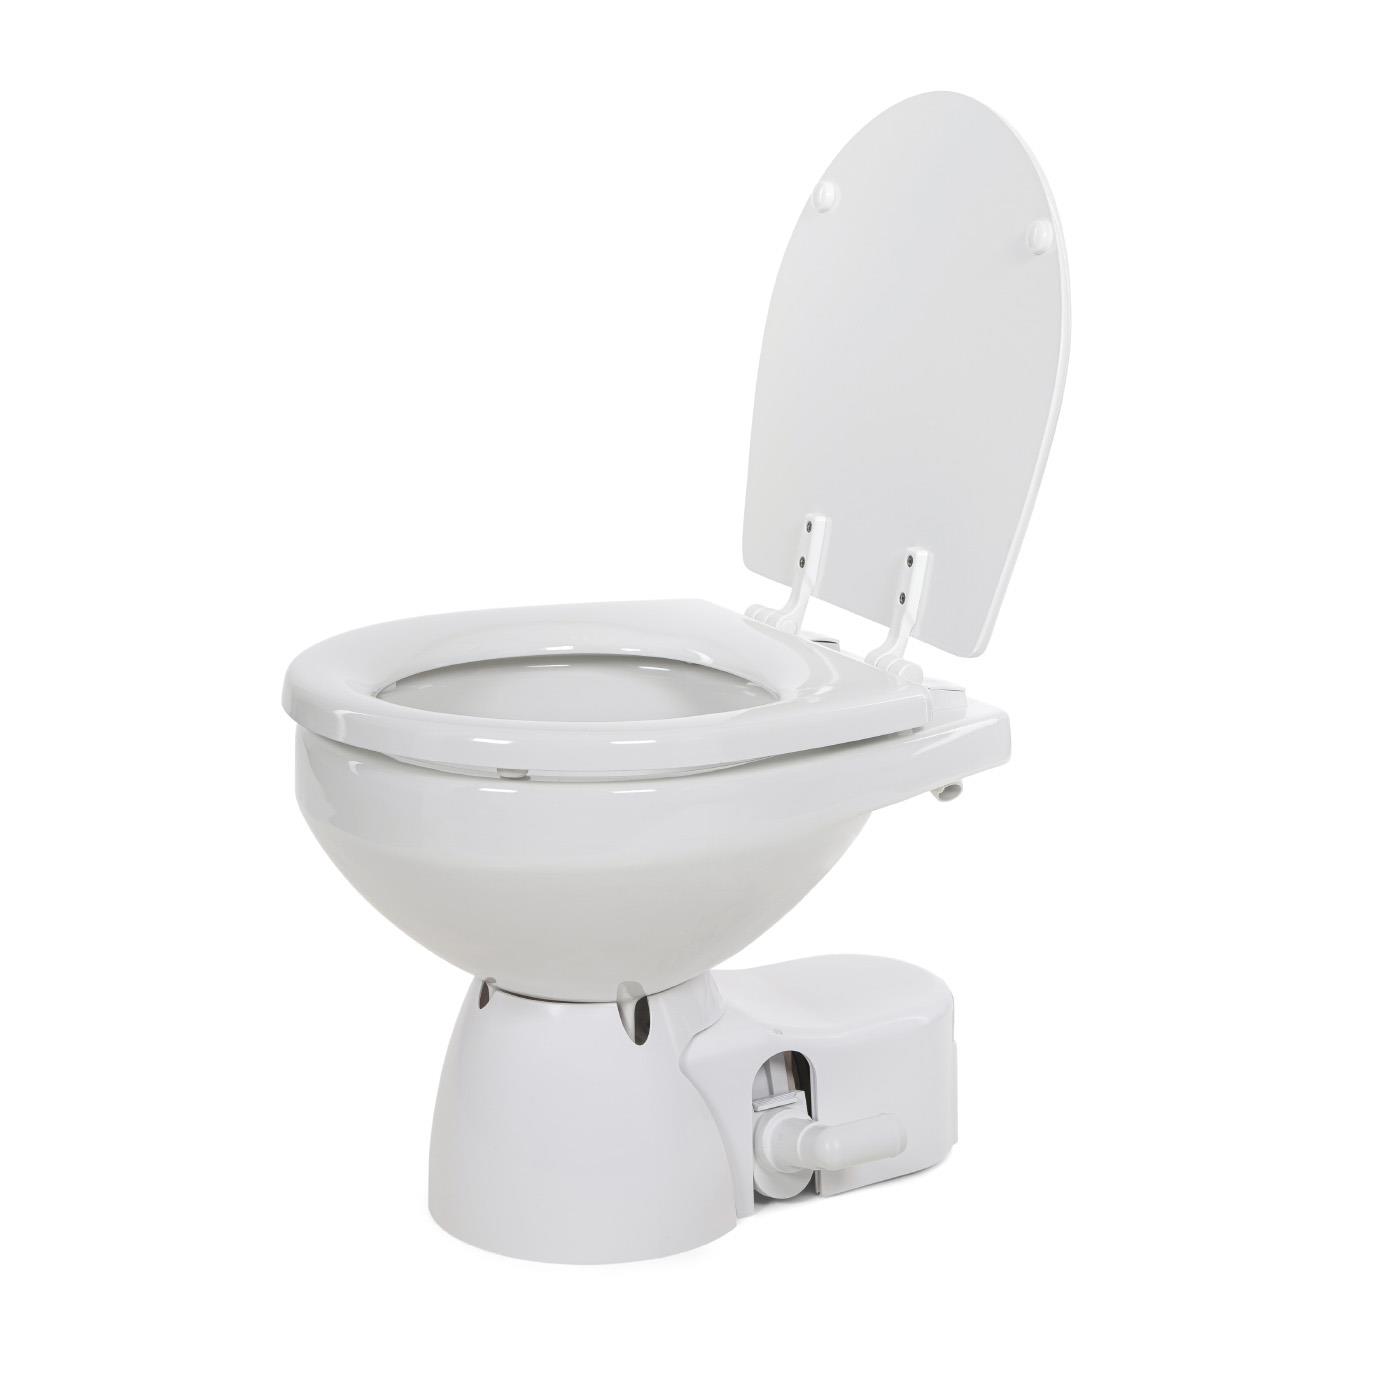 Jabsco Quiet Flush E2 Elektrische Toilette mit Spülpumpe, Kompaktgröße, 12V